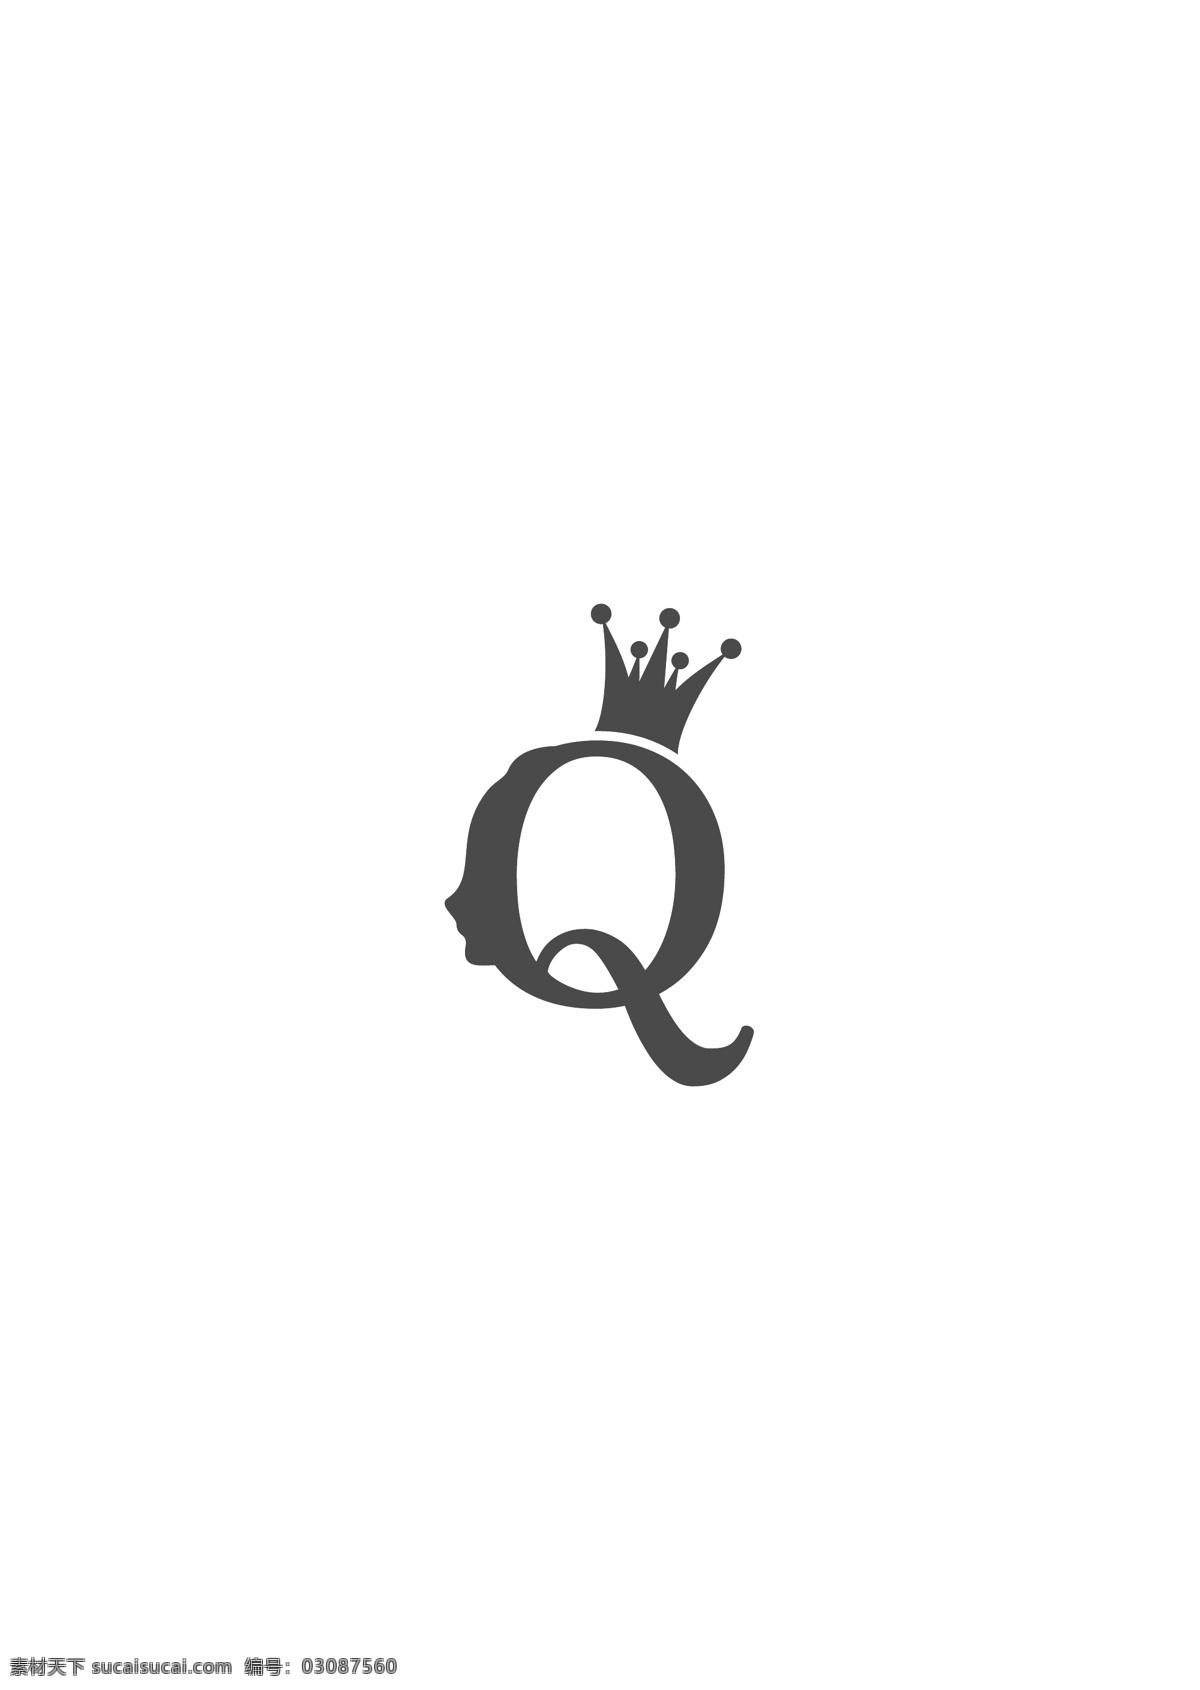 q 字母 造型 logo 简约 通用 领域 科技 标志 创意 广告 珠宝 互联网 科技logo 多用途 标识 公司 企业标识 企业logo 能源